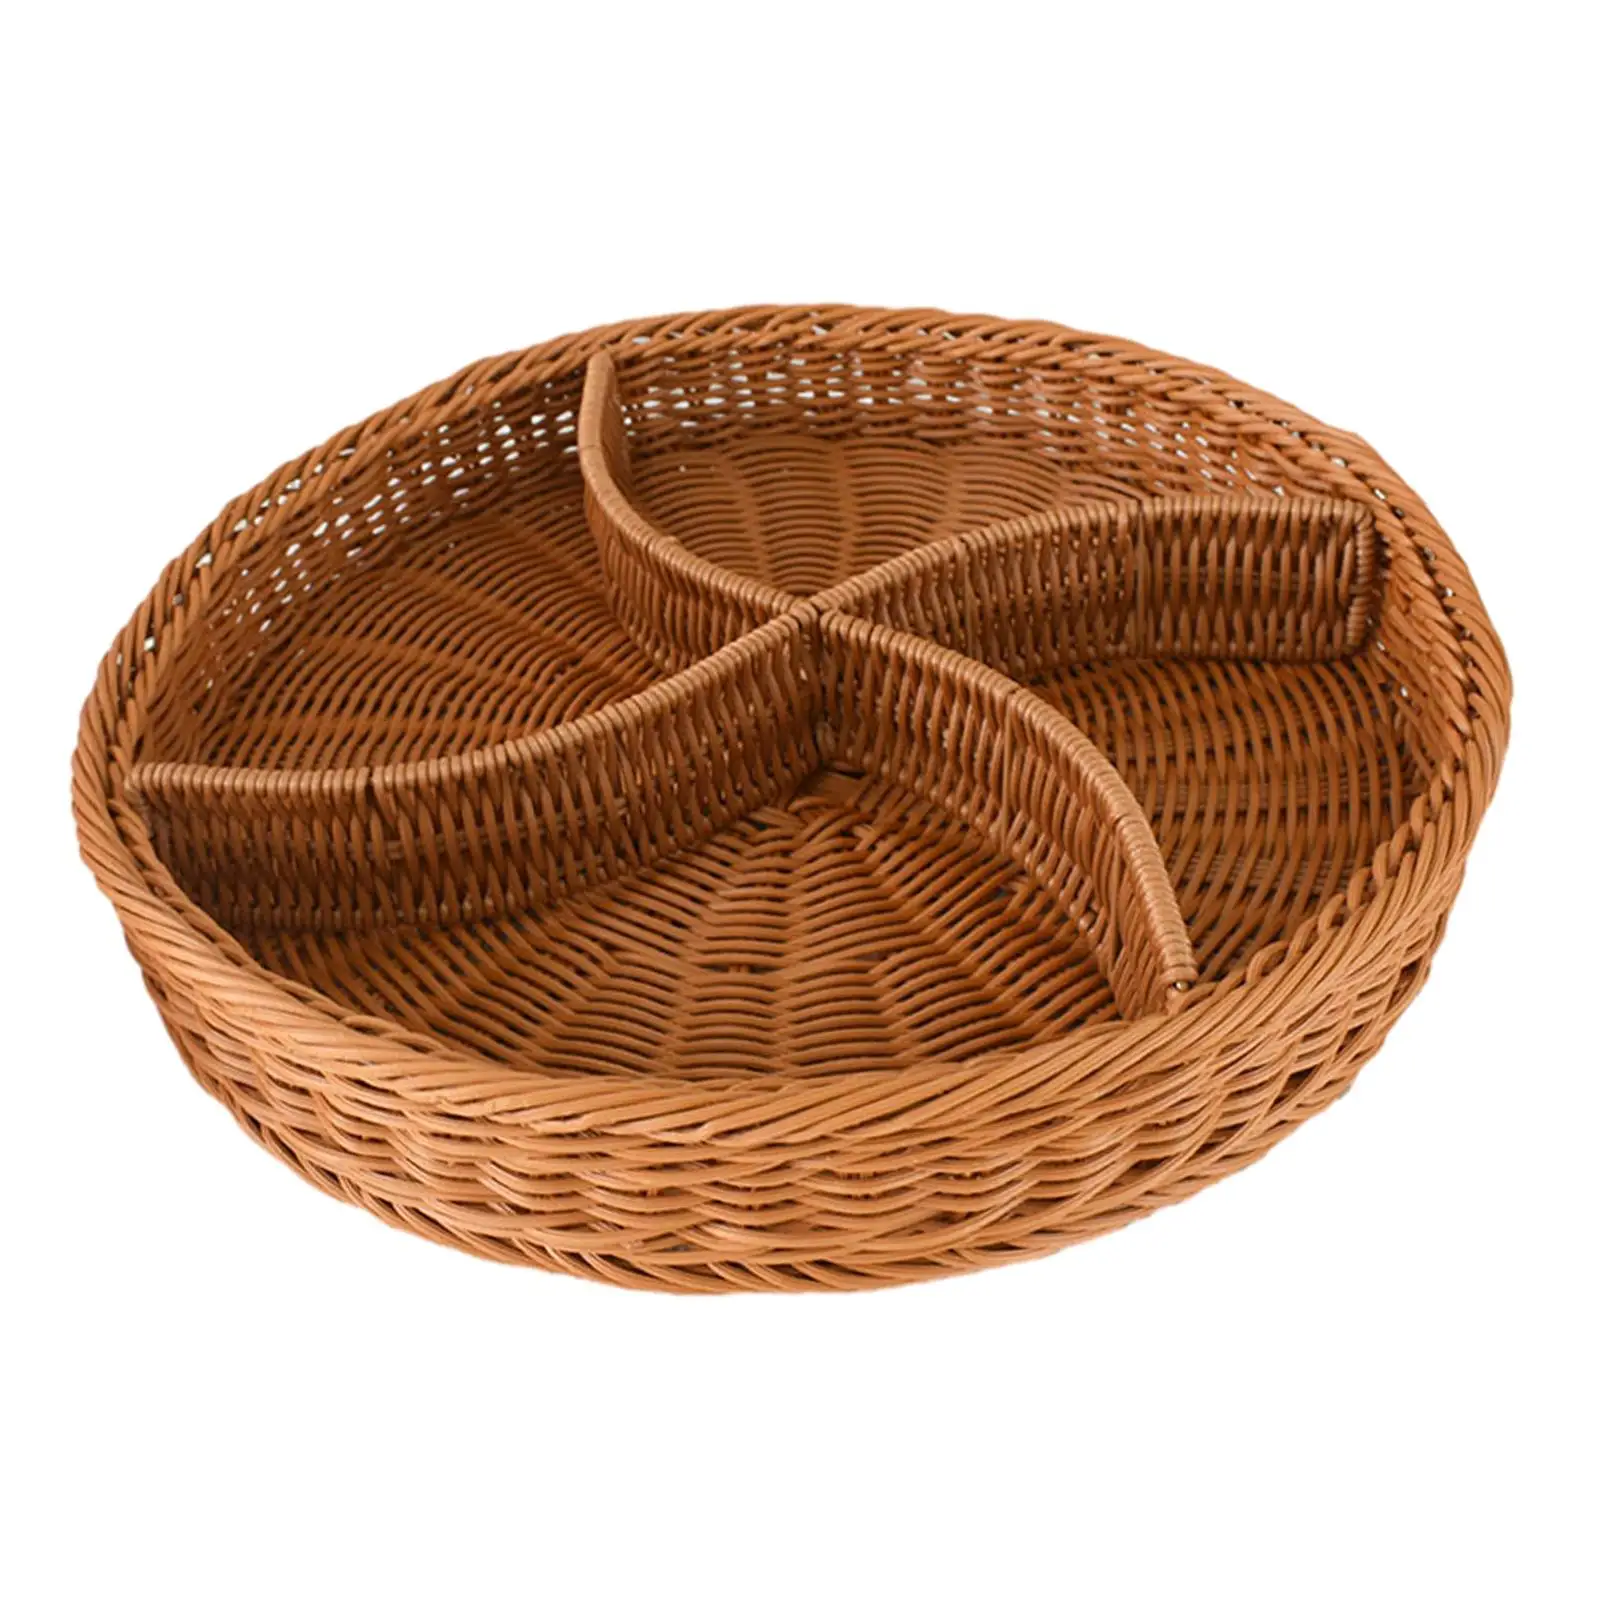 Wicker Woven Breads Baskets Decorative Kitchen Organizer Hand Woven Serving Basket for Breakfast Restaurant Kitchen Fruits